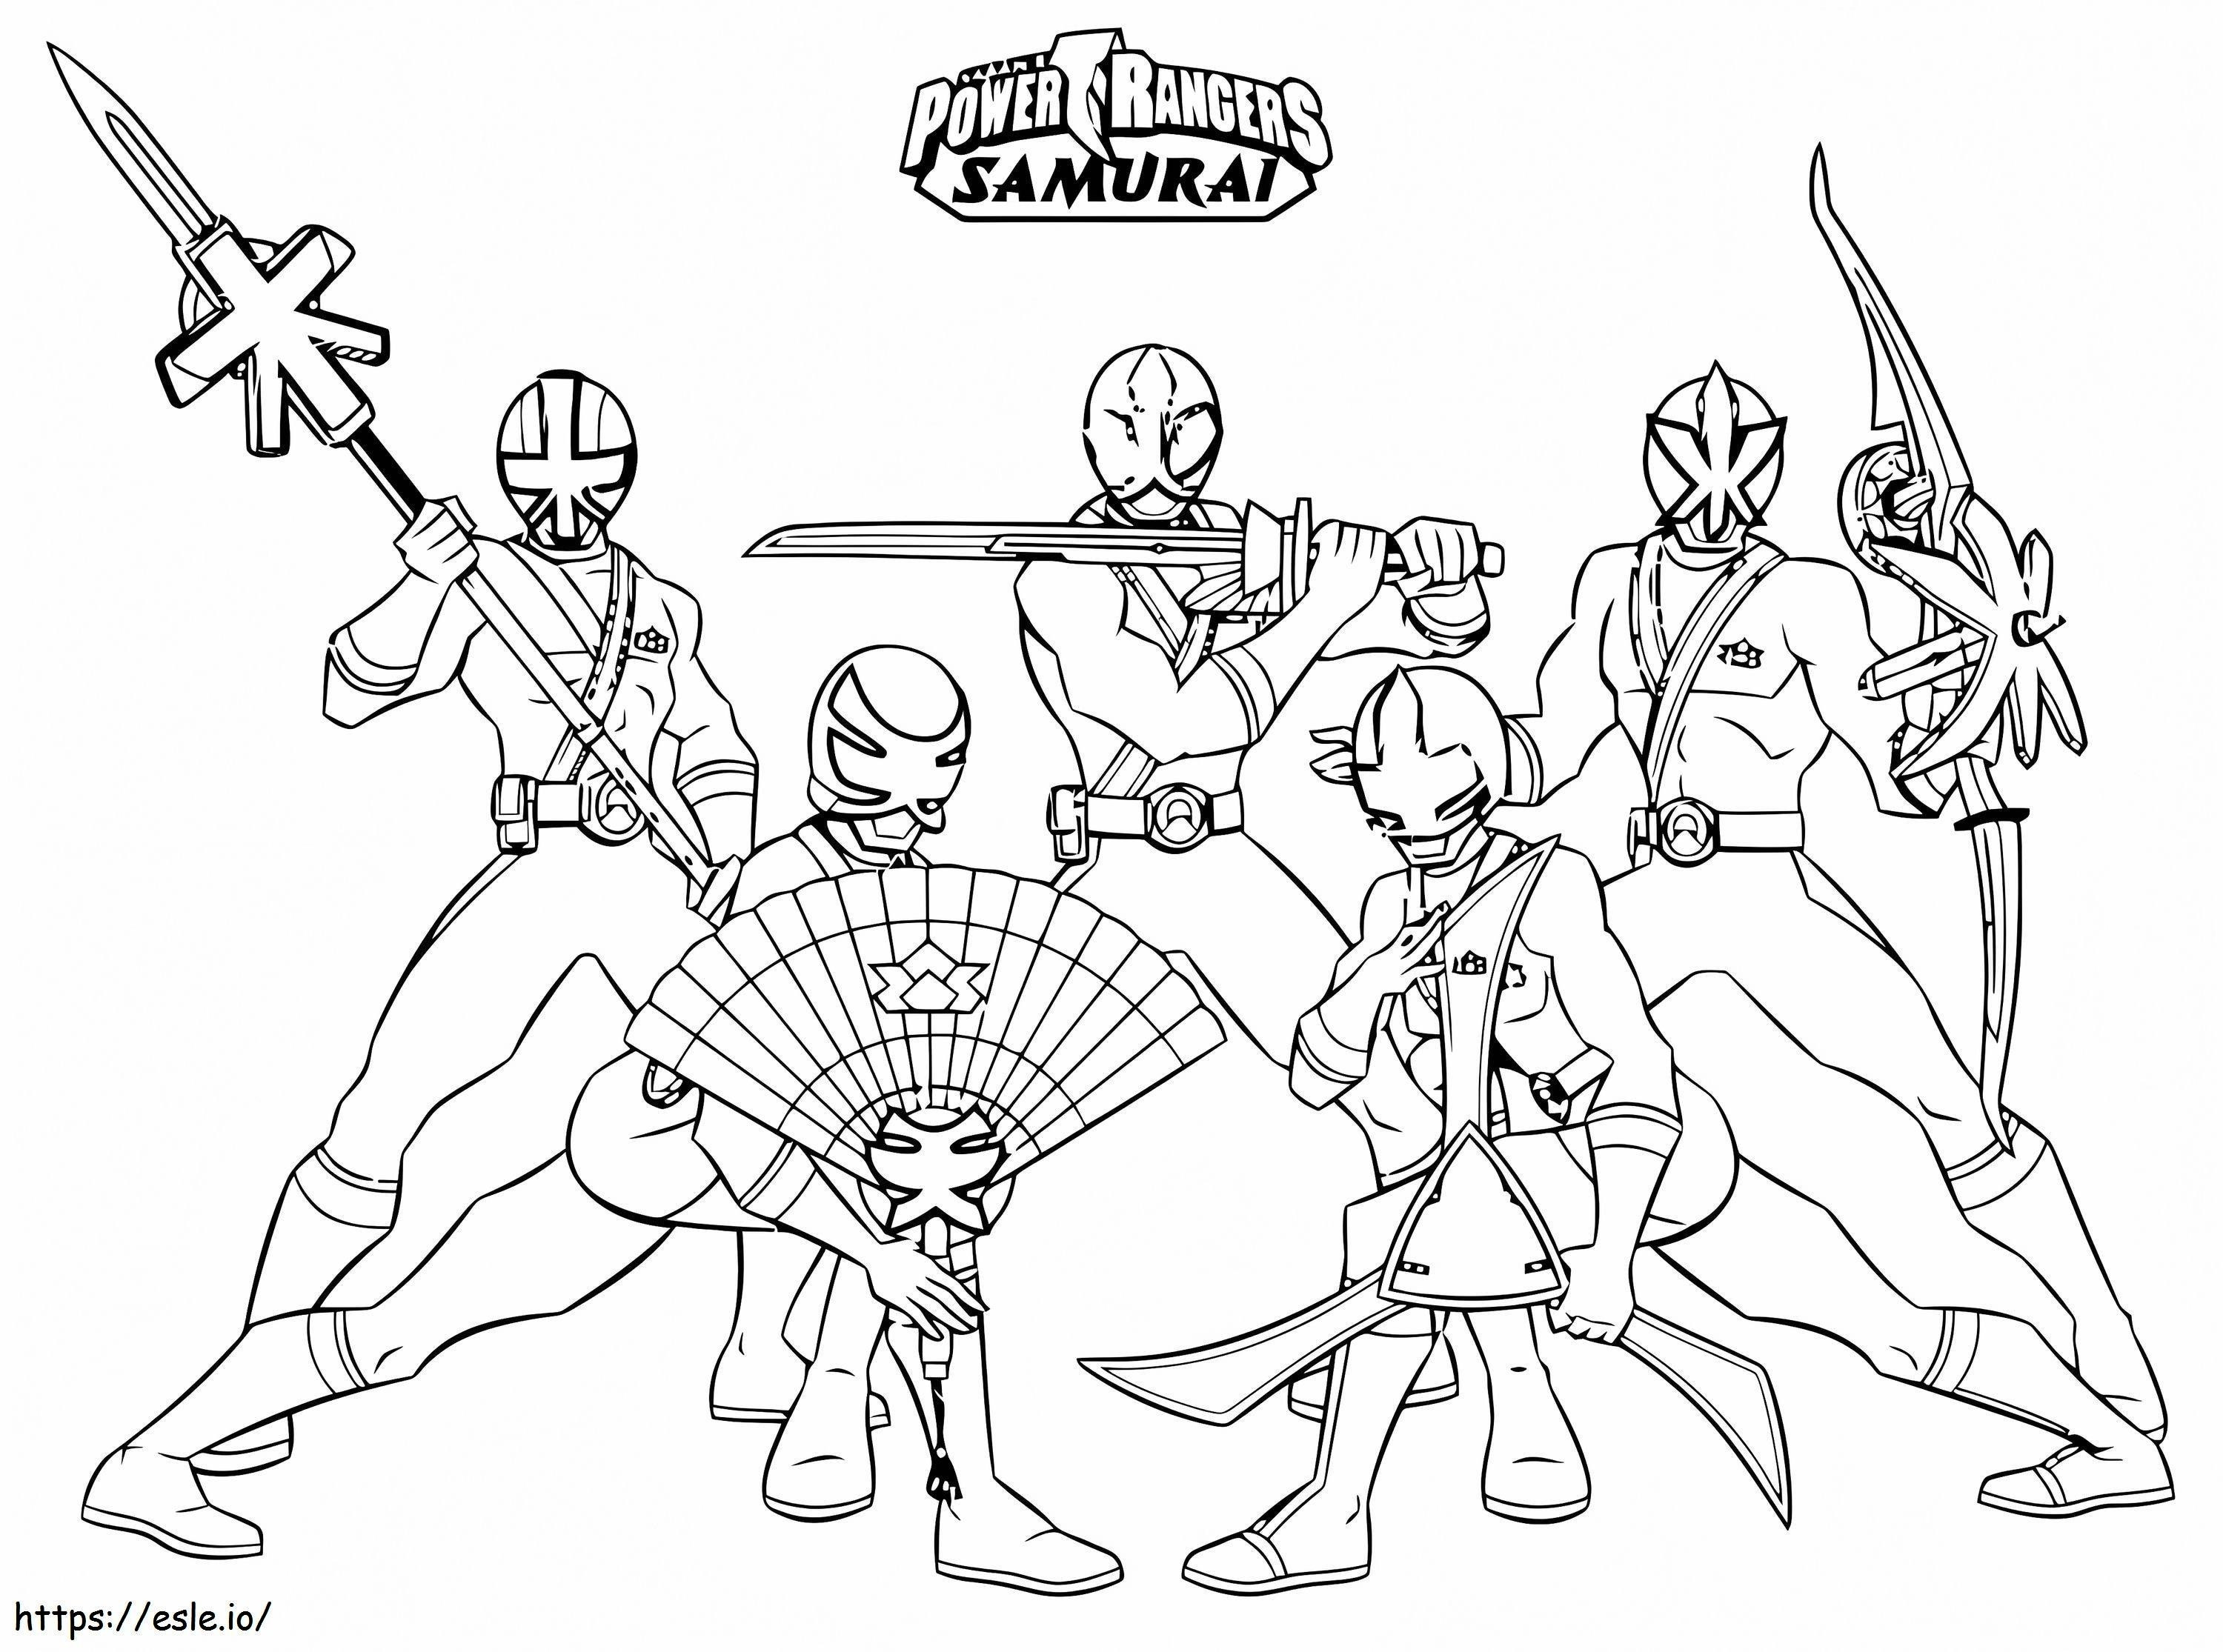 1542765316 Etkileyici Power Rangers Samurai Çevrimiçi Erkek Çocuklar İçin Ücretsiz Yazdırma boyama